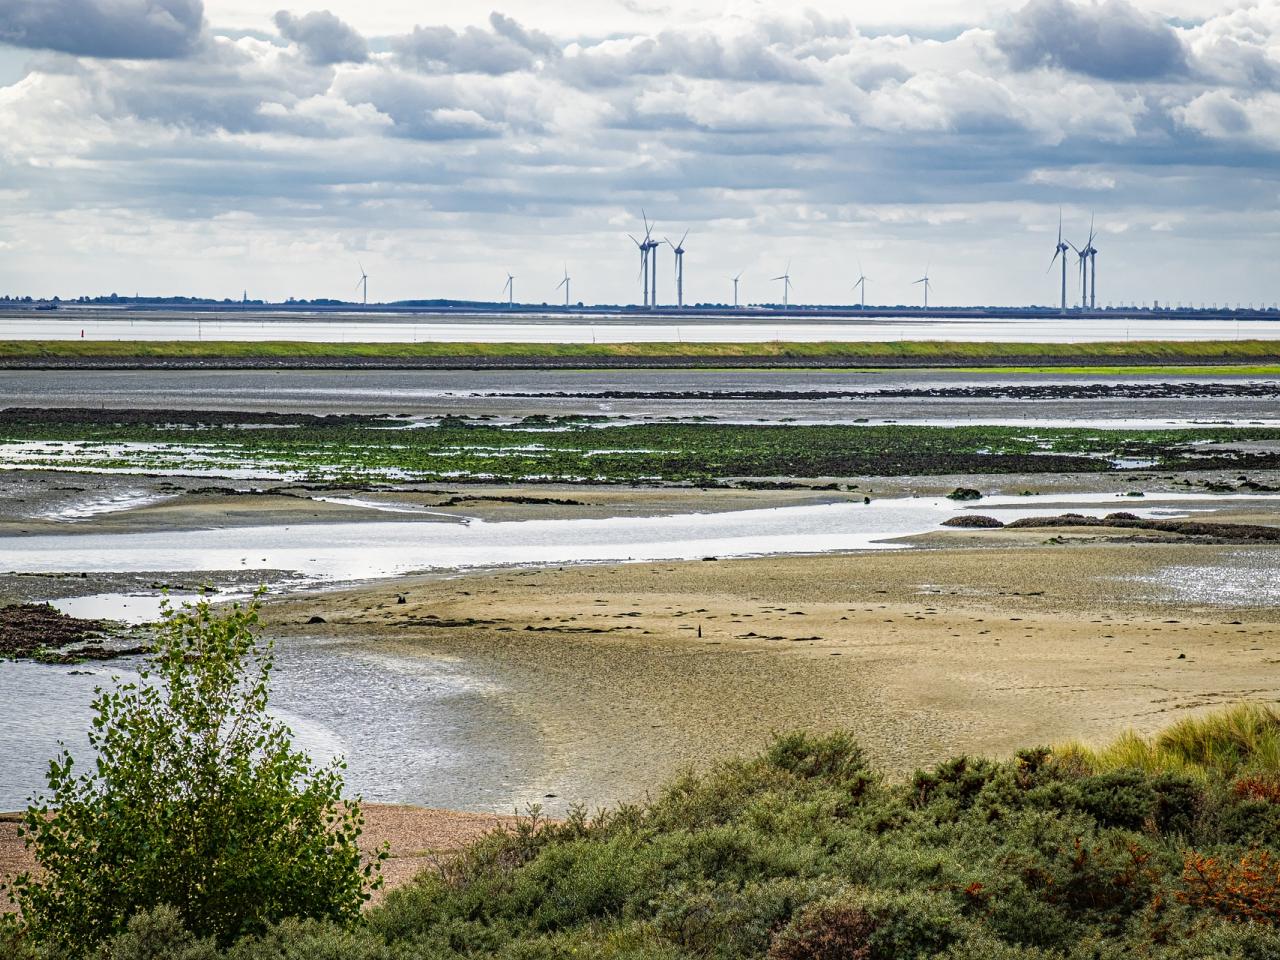 Natuurgebied Schelphoeck in Zeelan. Water en zandvlaktes met windmolens op de horizon.